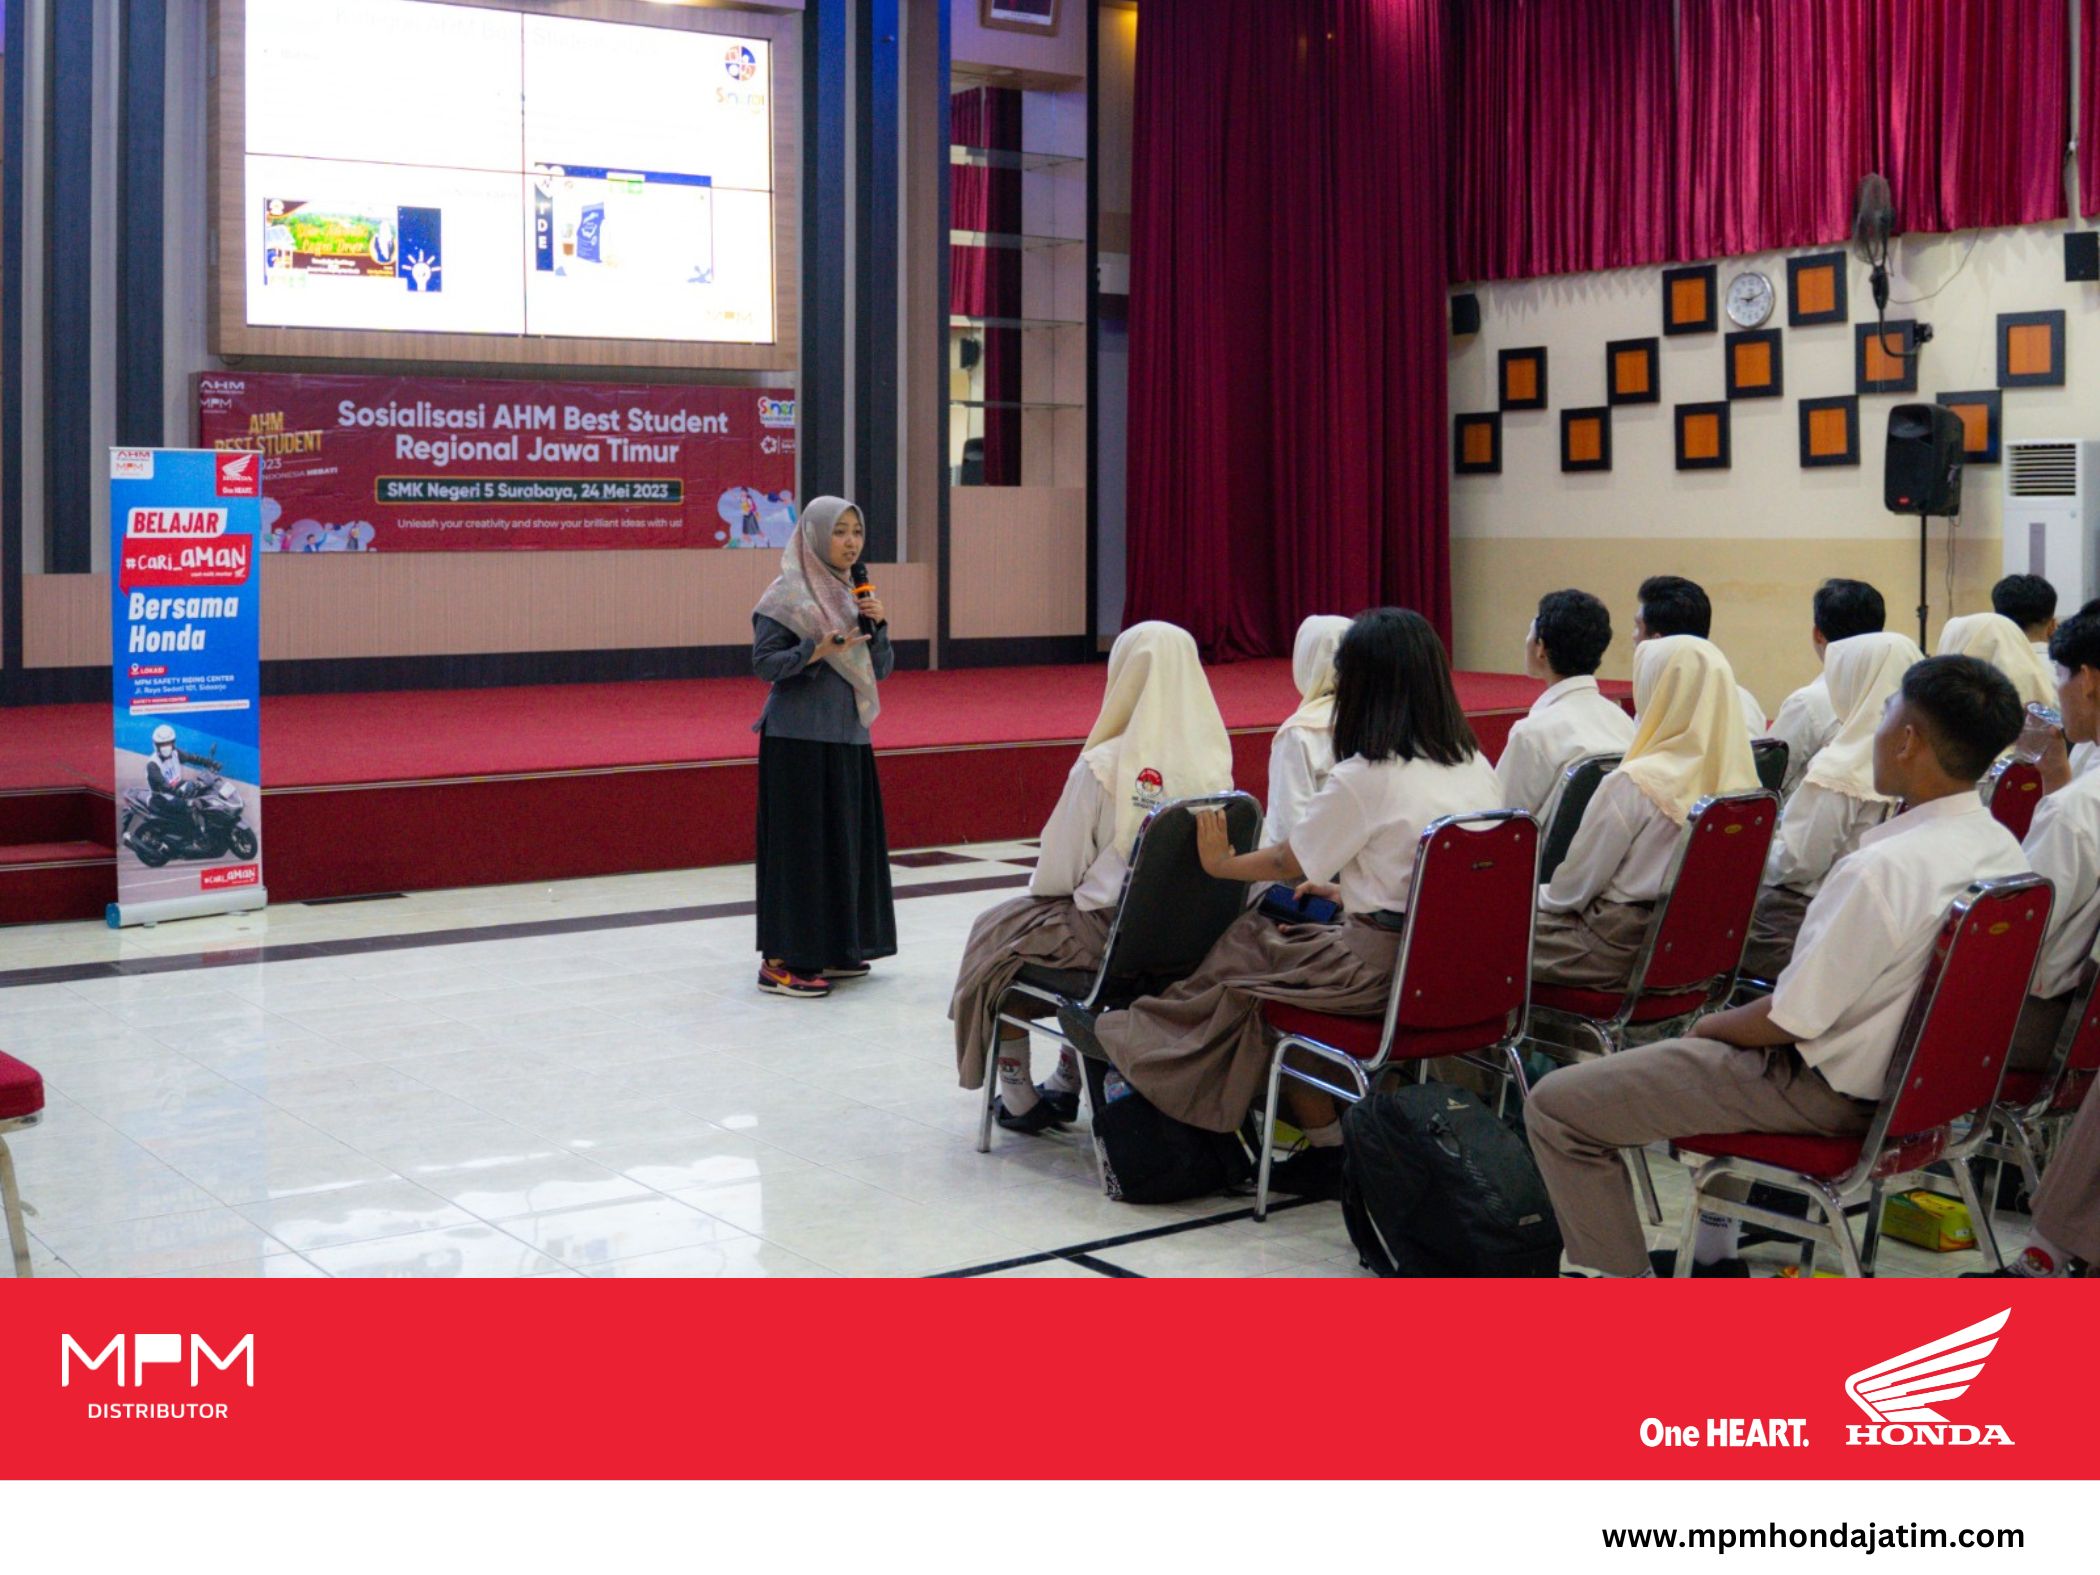 Dicari Pelajar Kreatif,  MPM Honda Jatim Sosialisasikan AHM Best Student di SMKN 5 Surabaya.